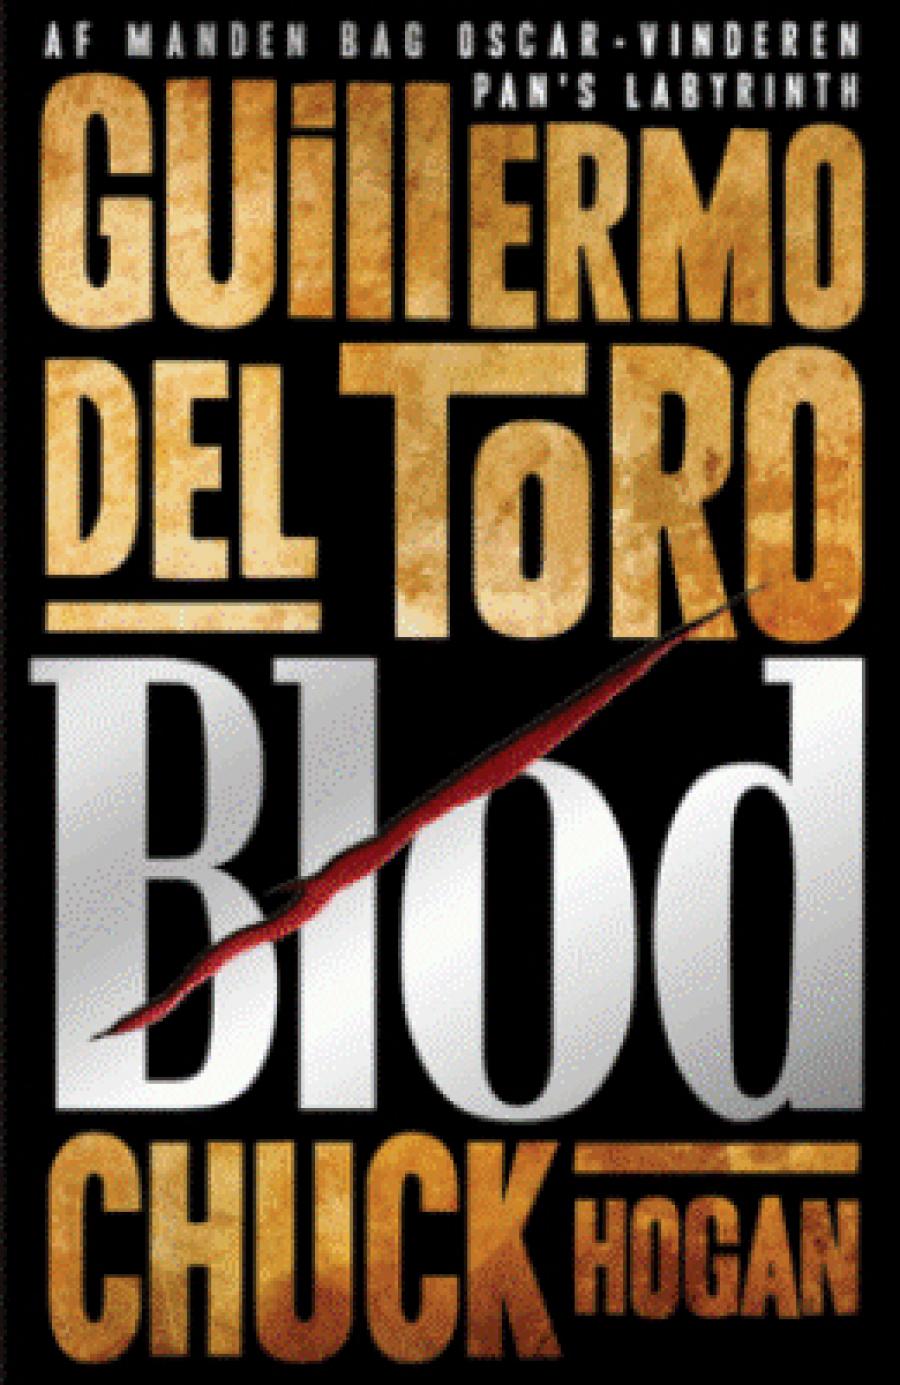 Blod af Guillermo del Toro og Chuck Hogan